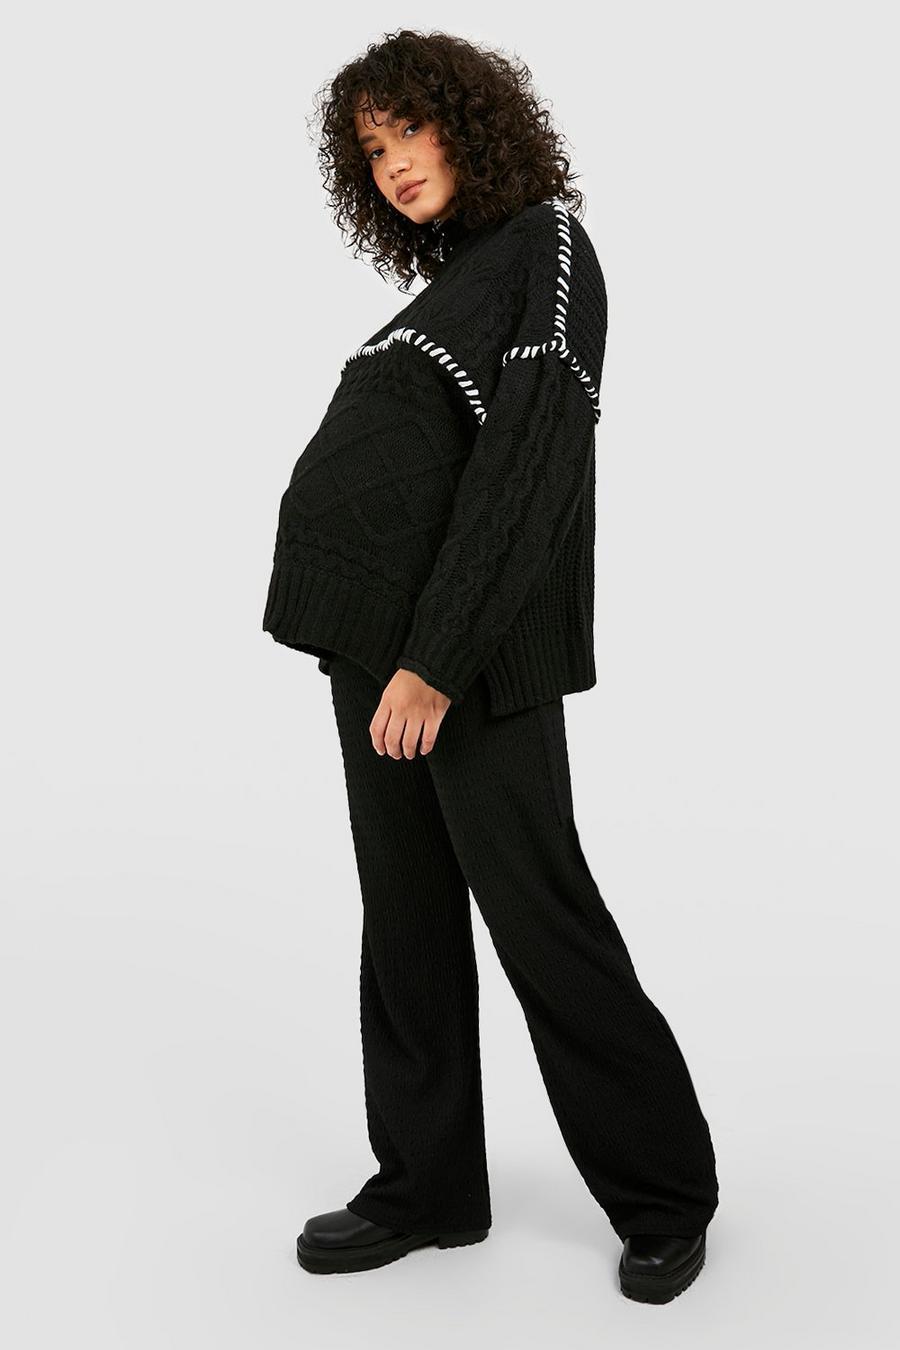 czarny sweter ciążowy oversize kontrast półgolf